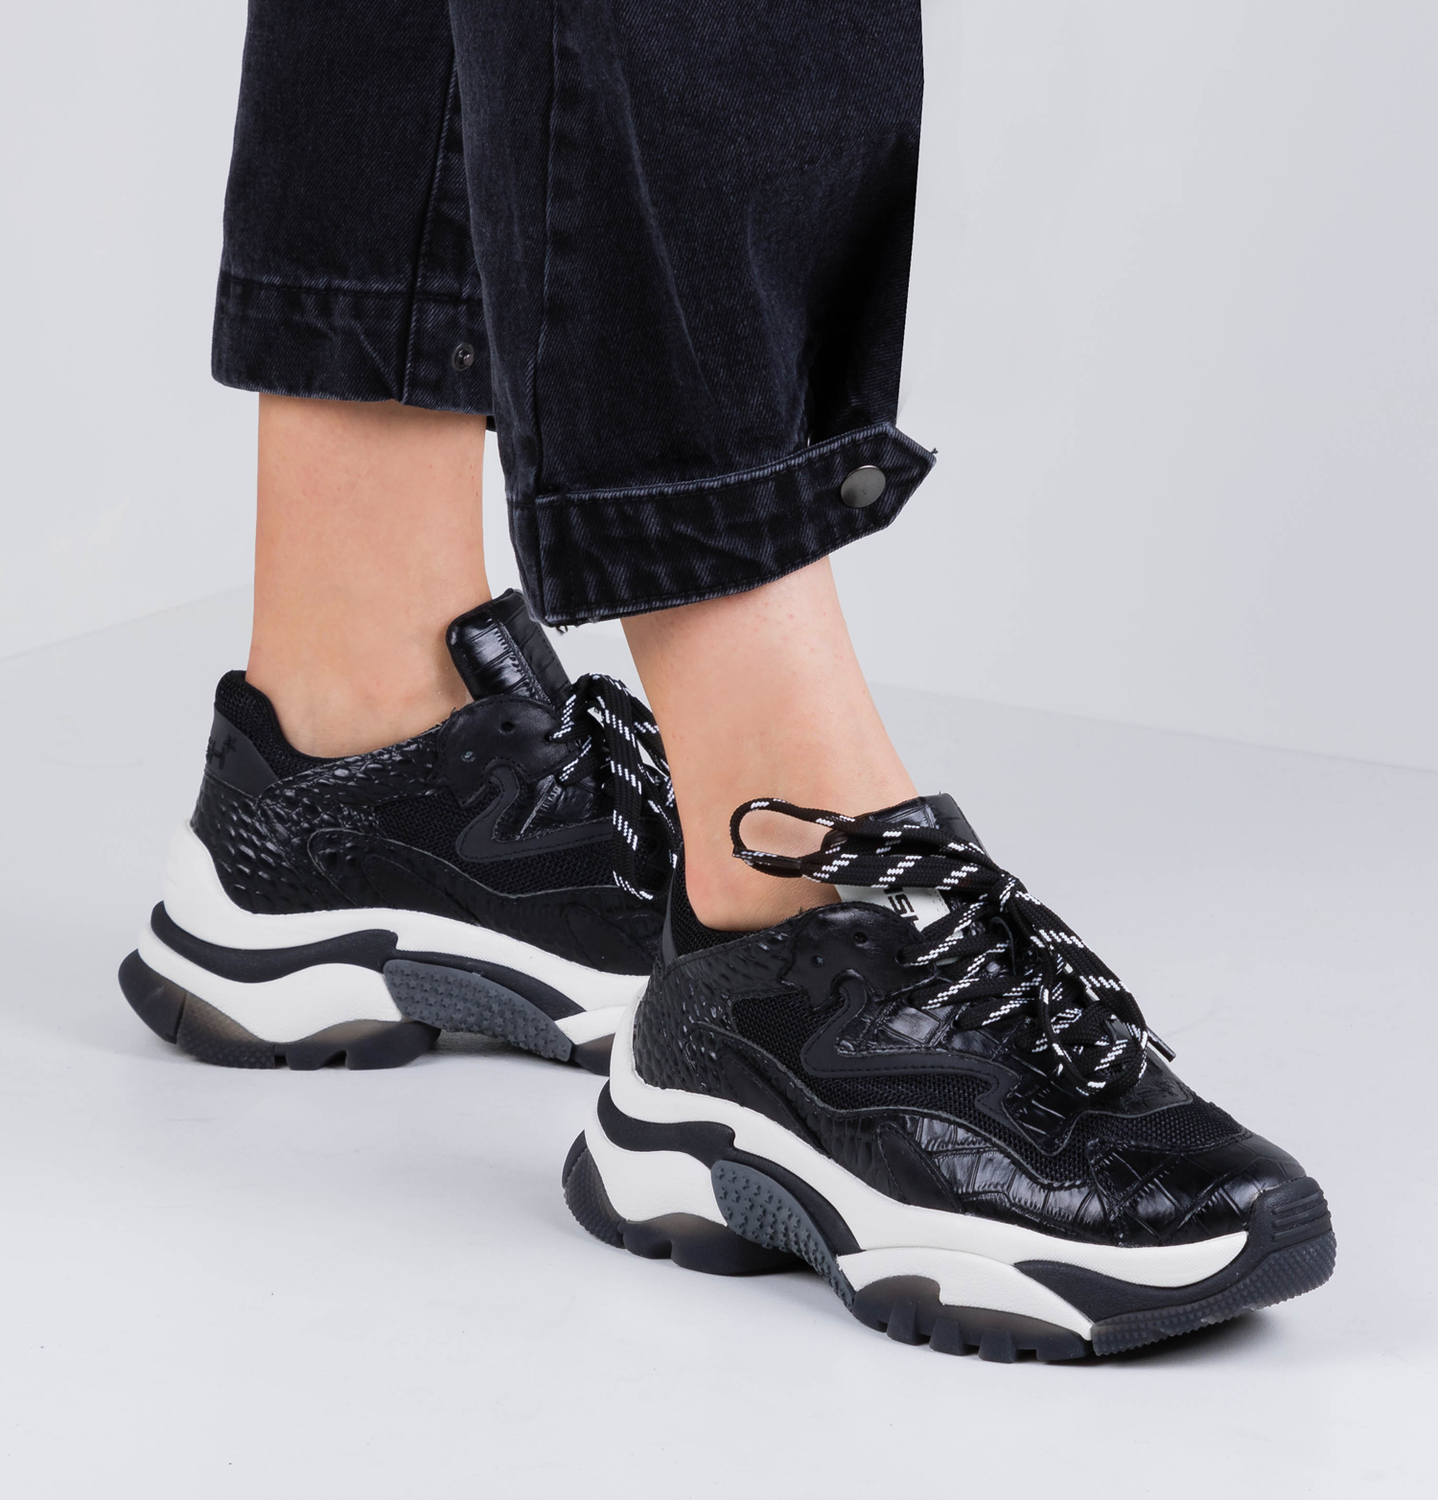 Ash sneakers black/white